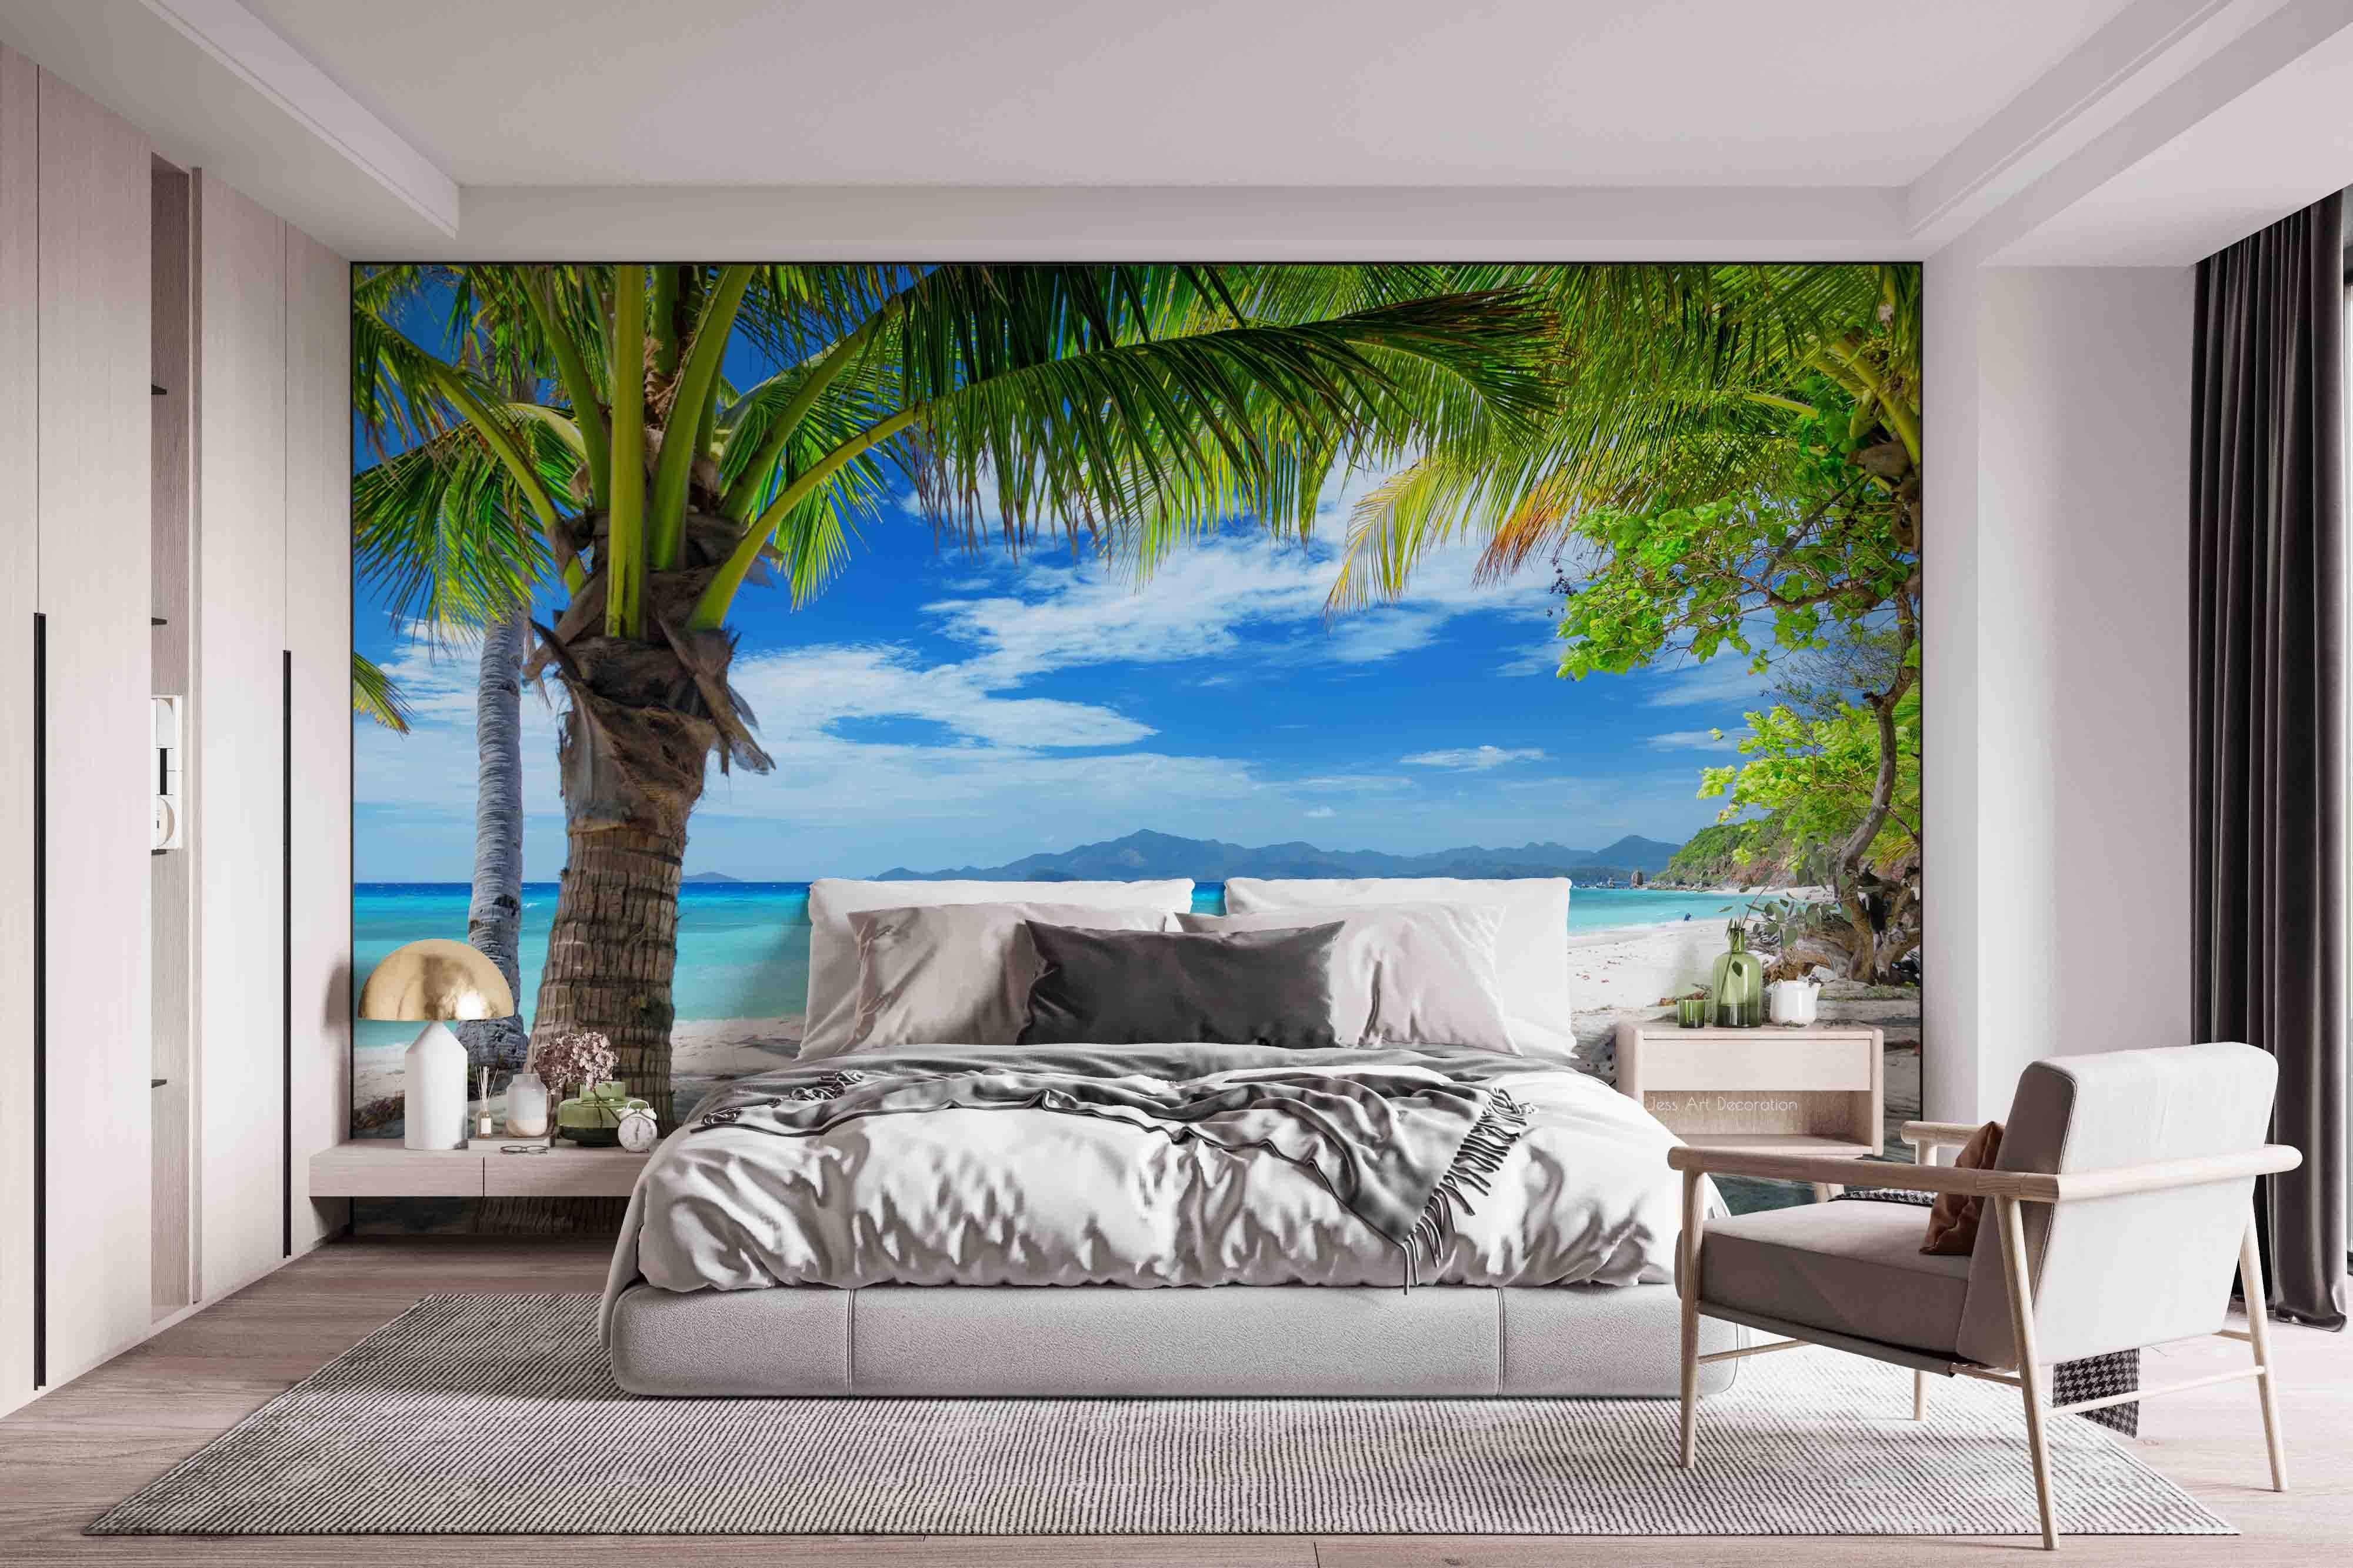 3D Beach Palm Tree Ocean Landscape Wall Mural Wallpaper GD 2489- Jess Art Decoration